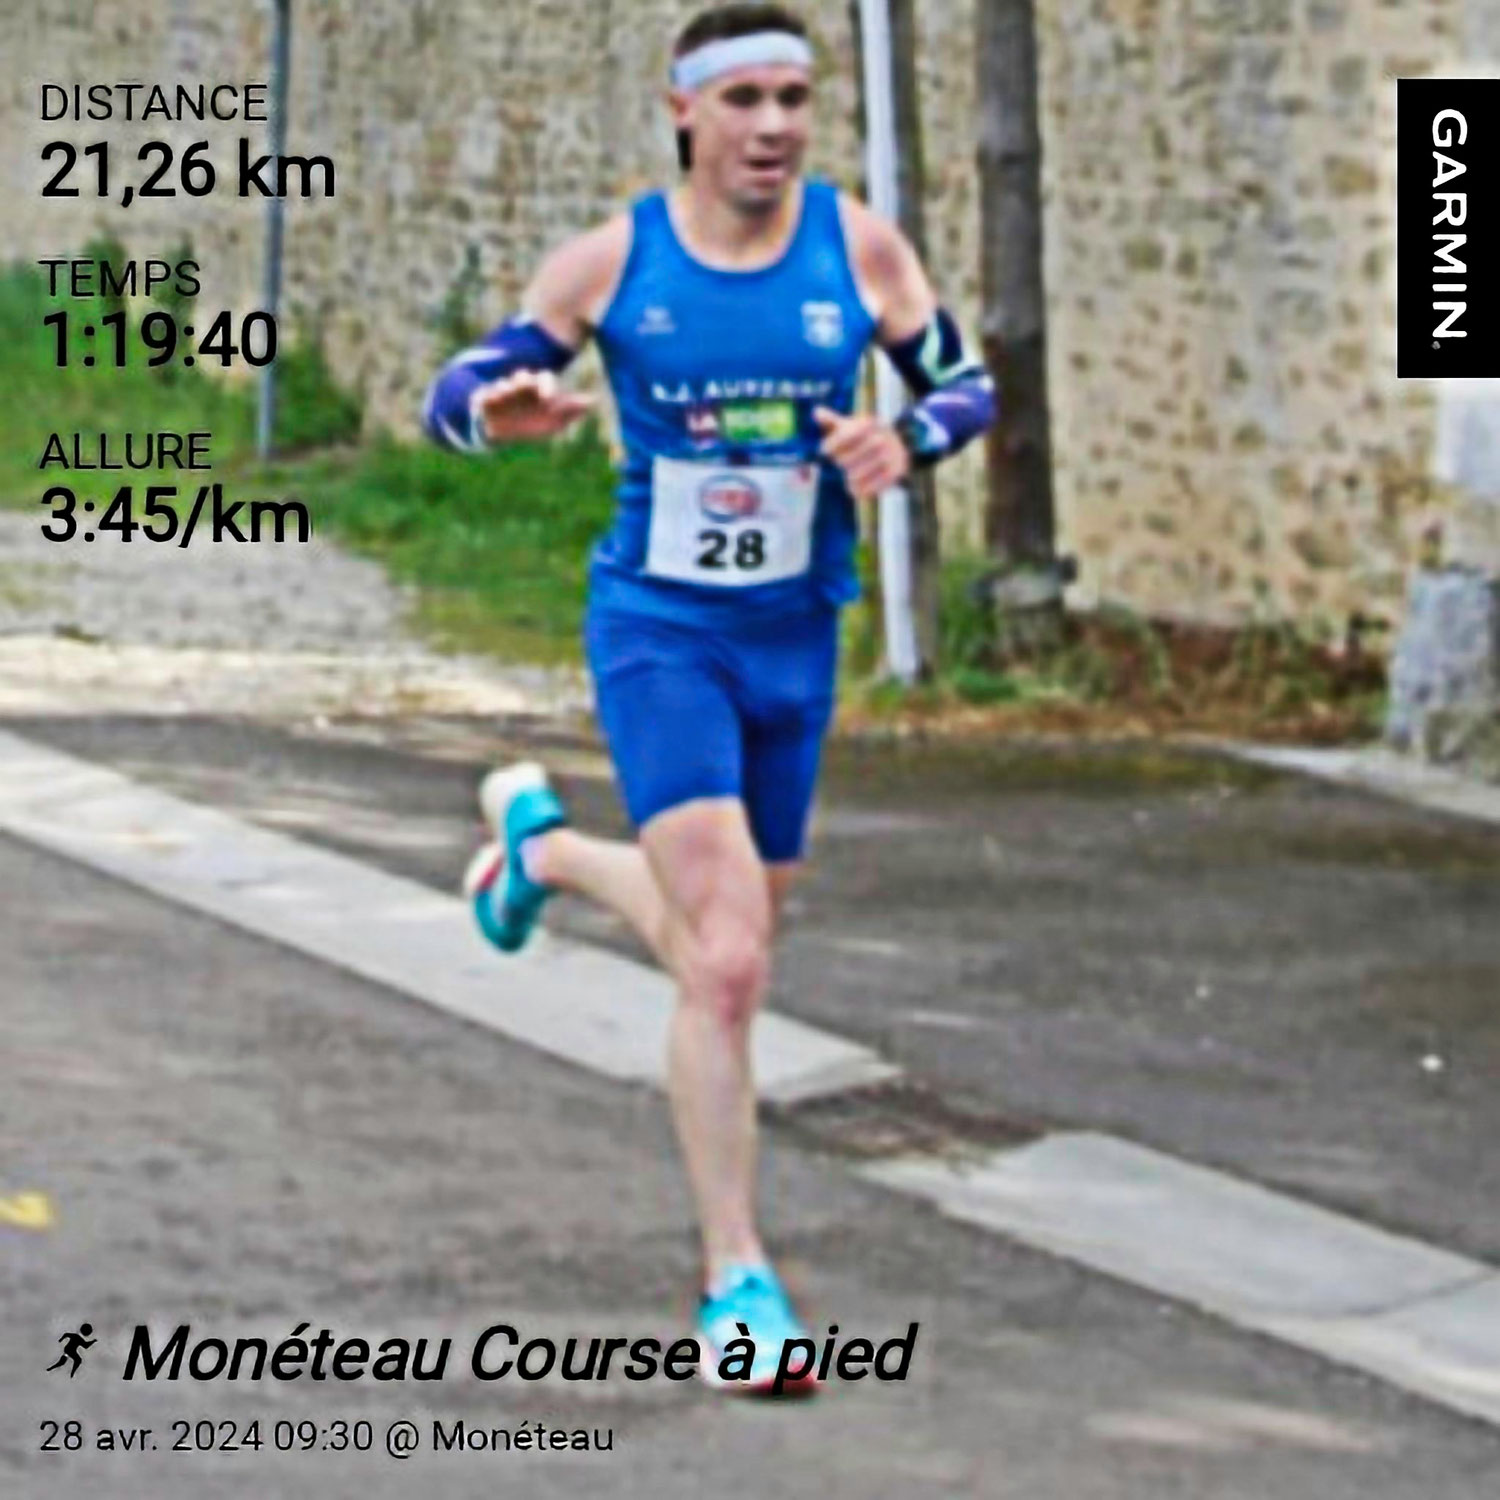 Le semi-marathon de Monéteau sourit à Fabien Gaudichon